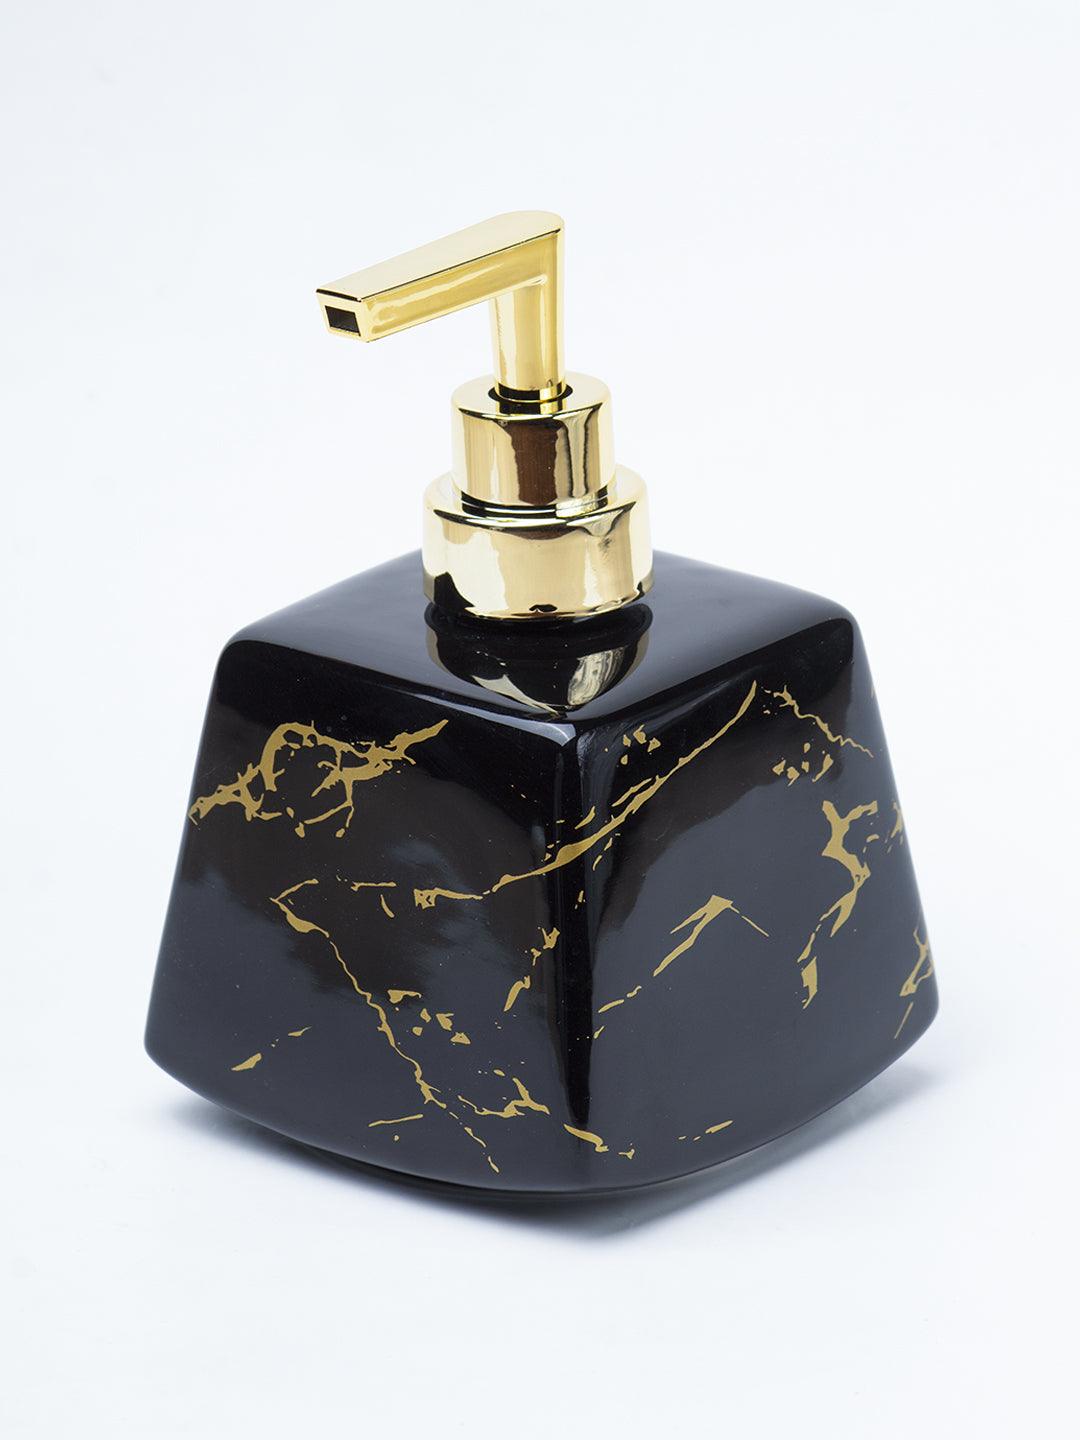 Black Ceramic Soap Dispenser - Stone Finish, Bath Accessories - 3